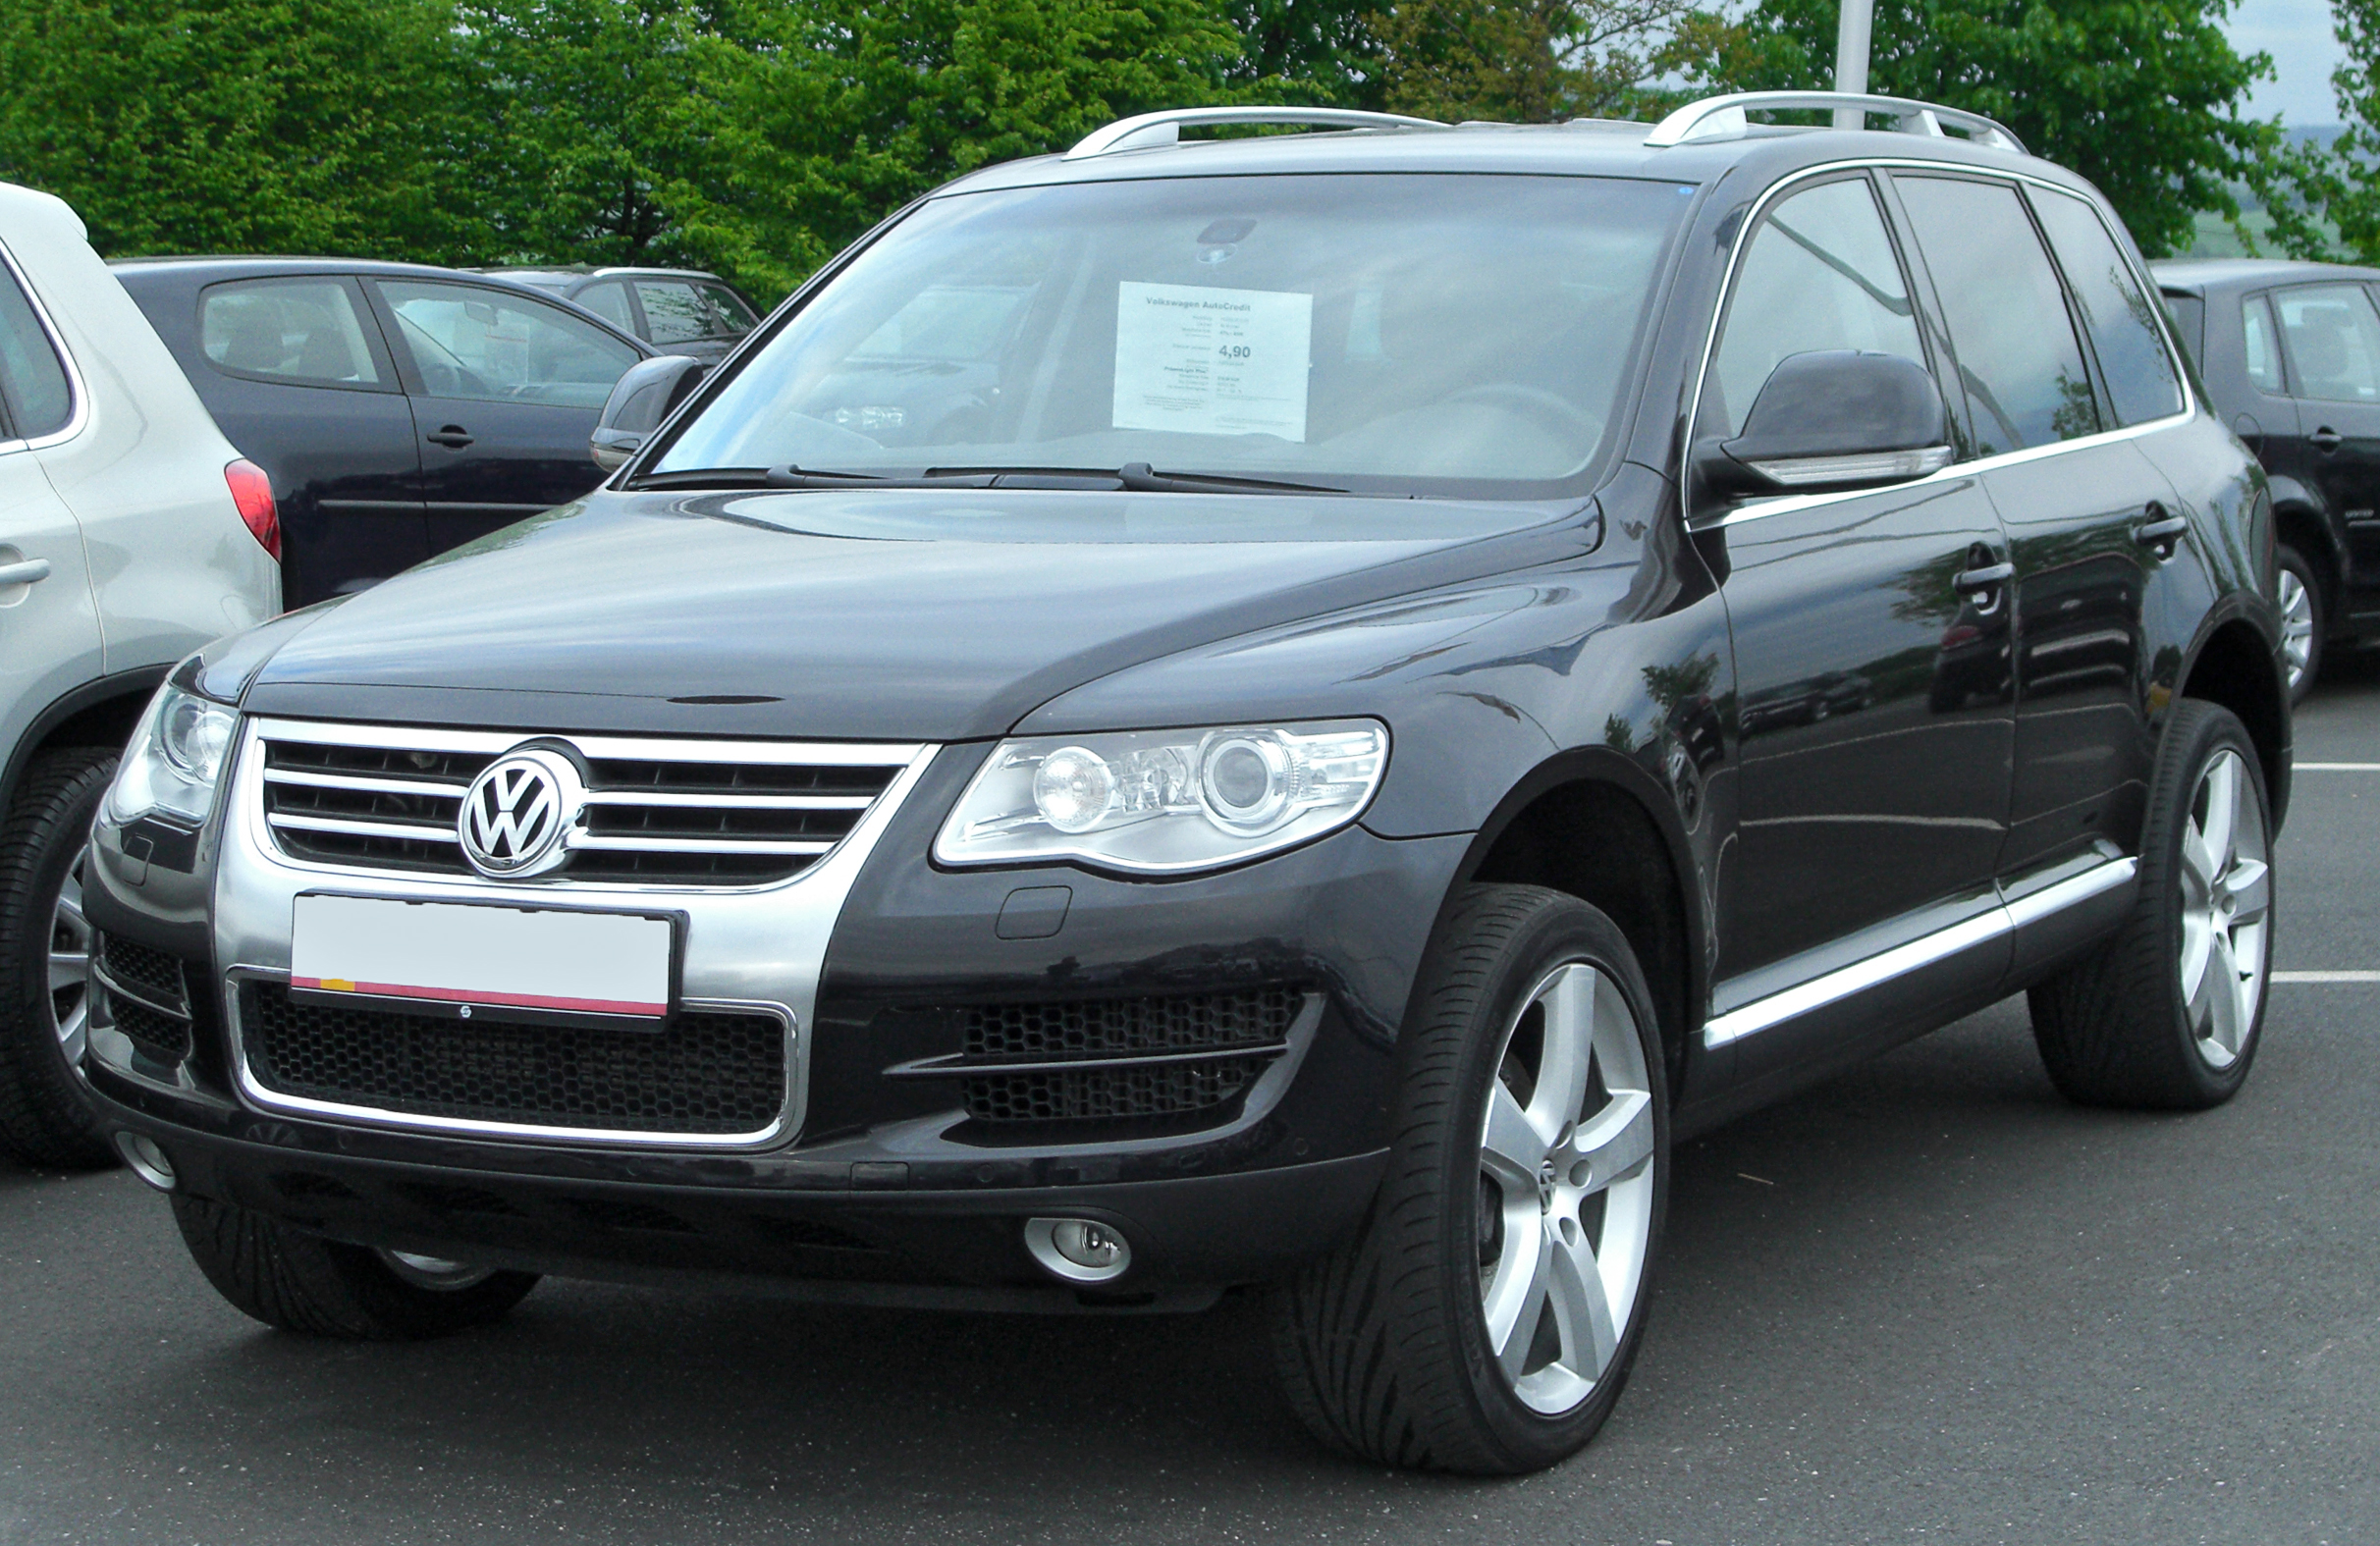 VW Touareg 2007 3.6